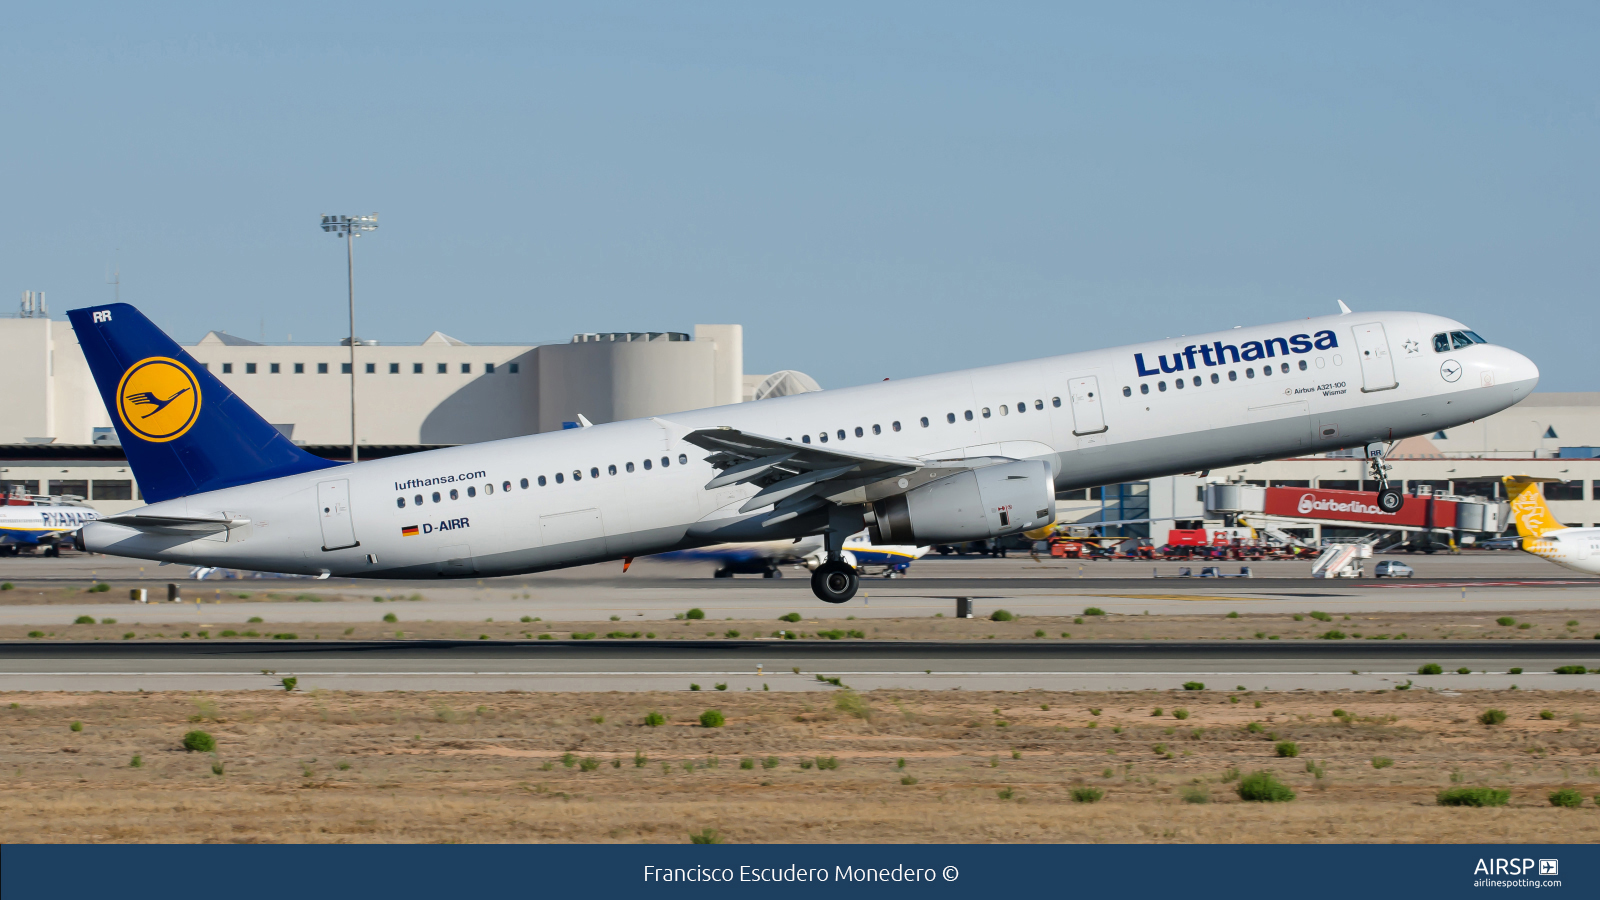 Lufthansa  Airbus A321  D-AIRR